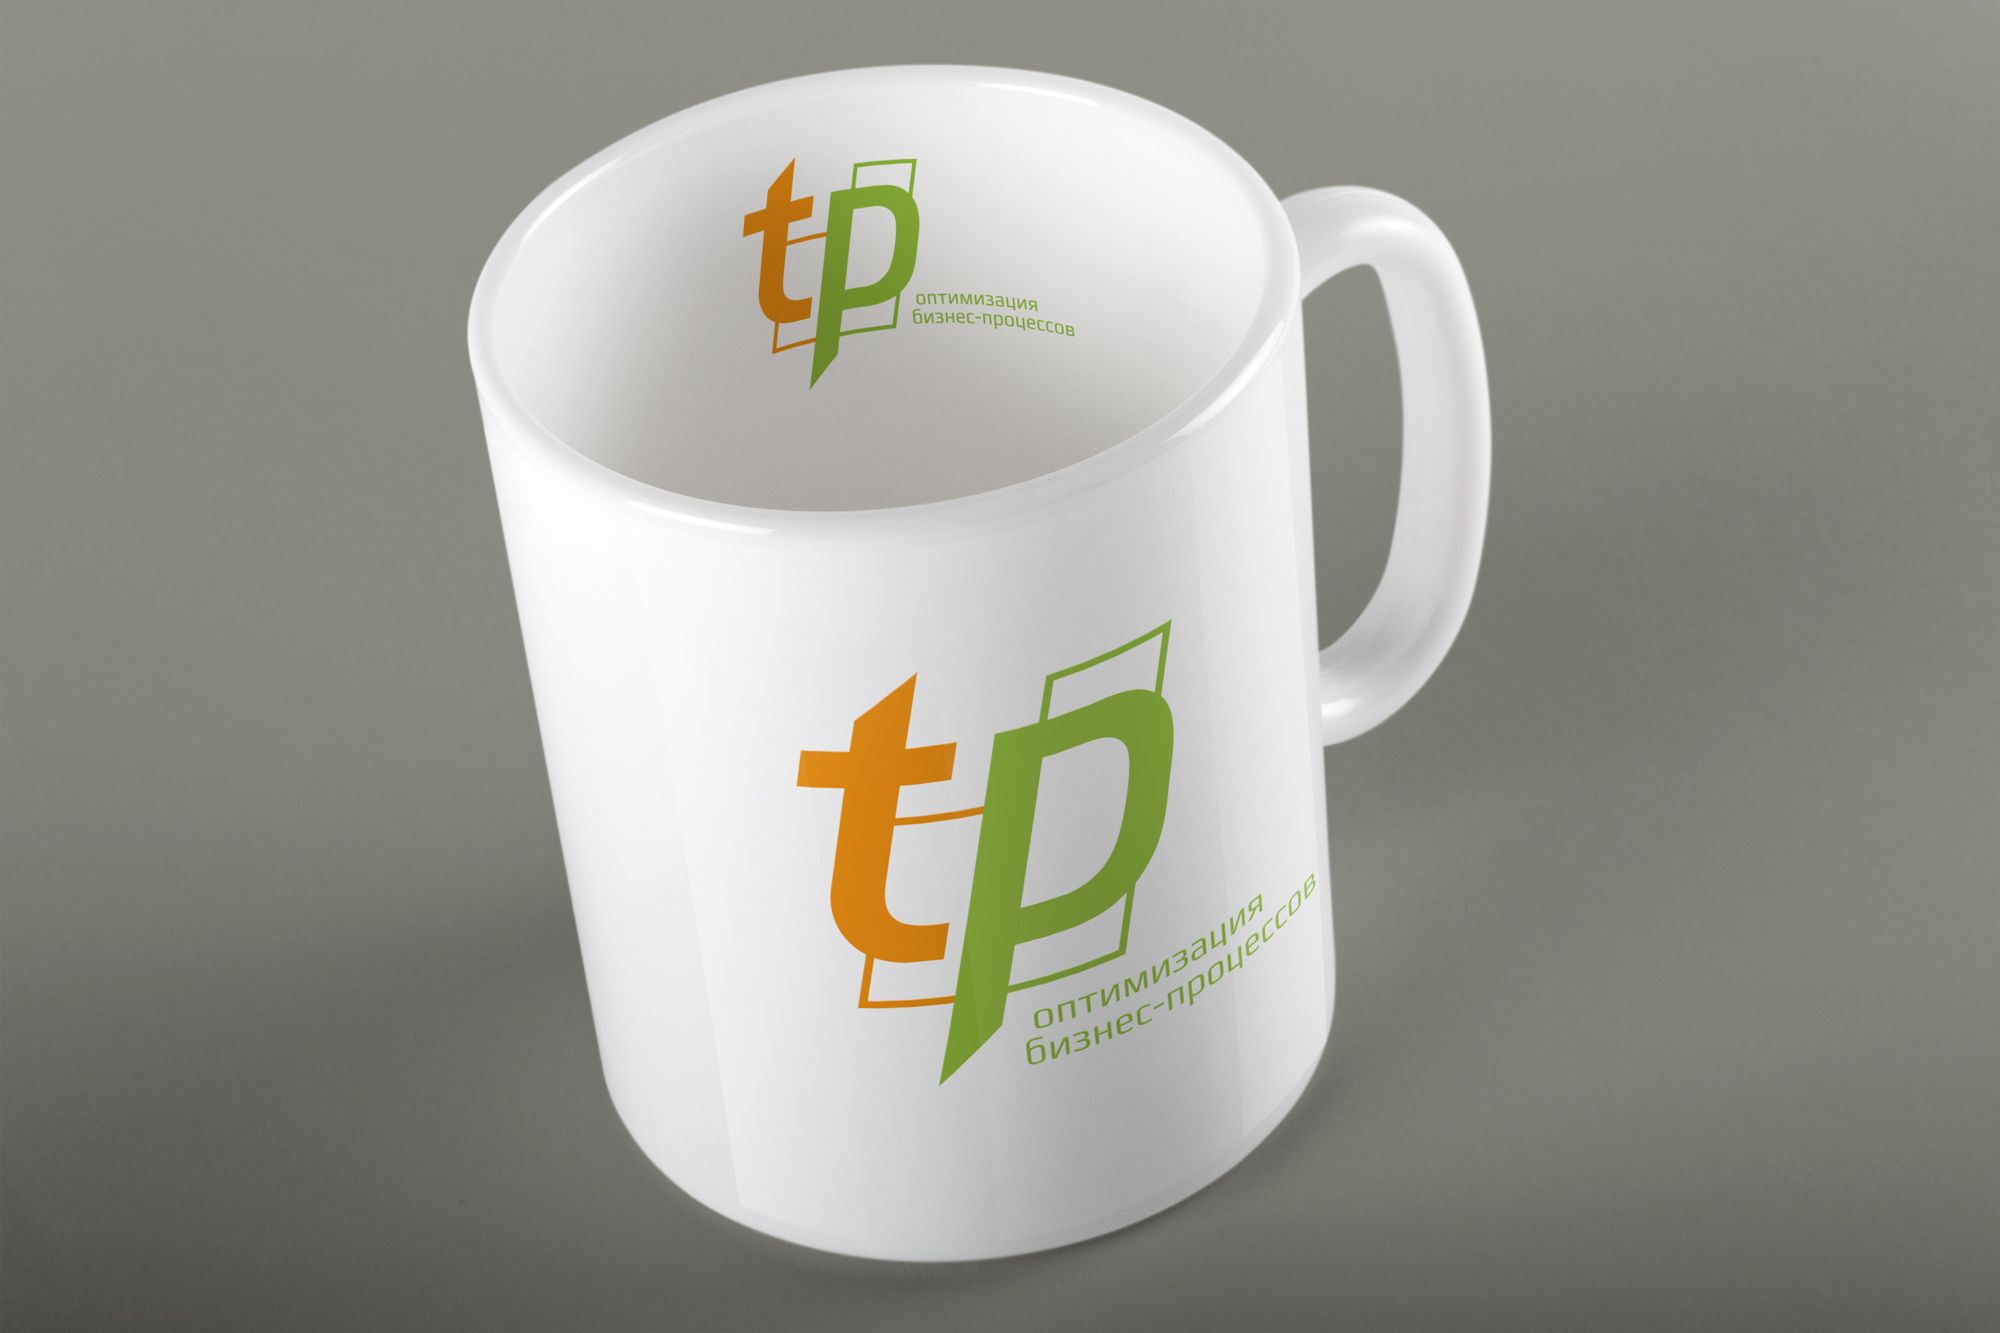 Лого и фирменный стиль для tp - дизайнер luishamilton